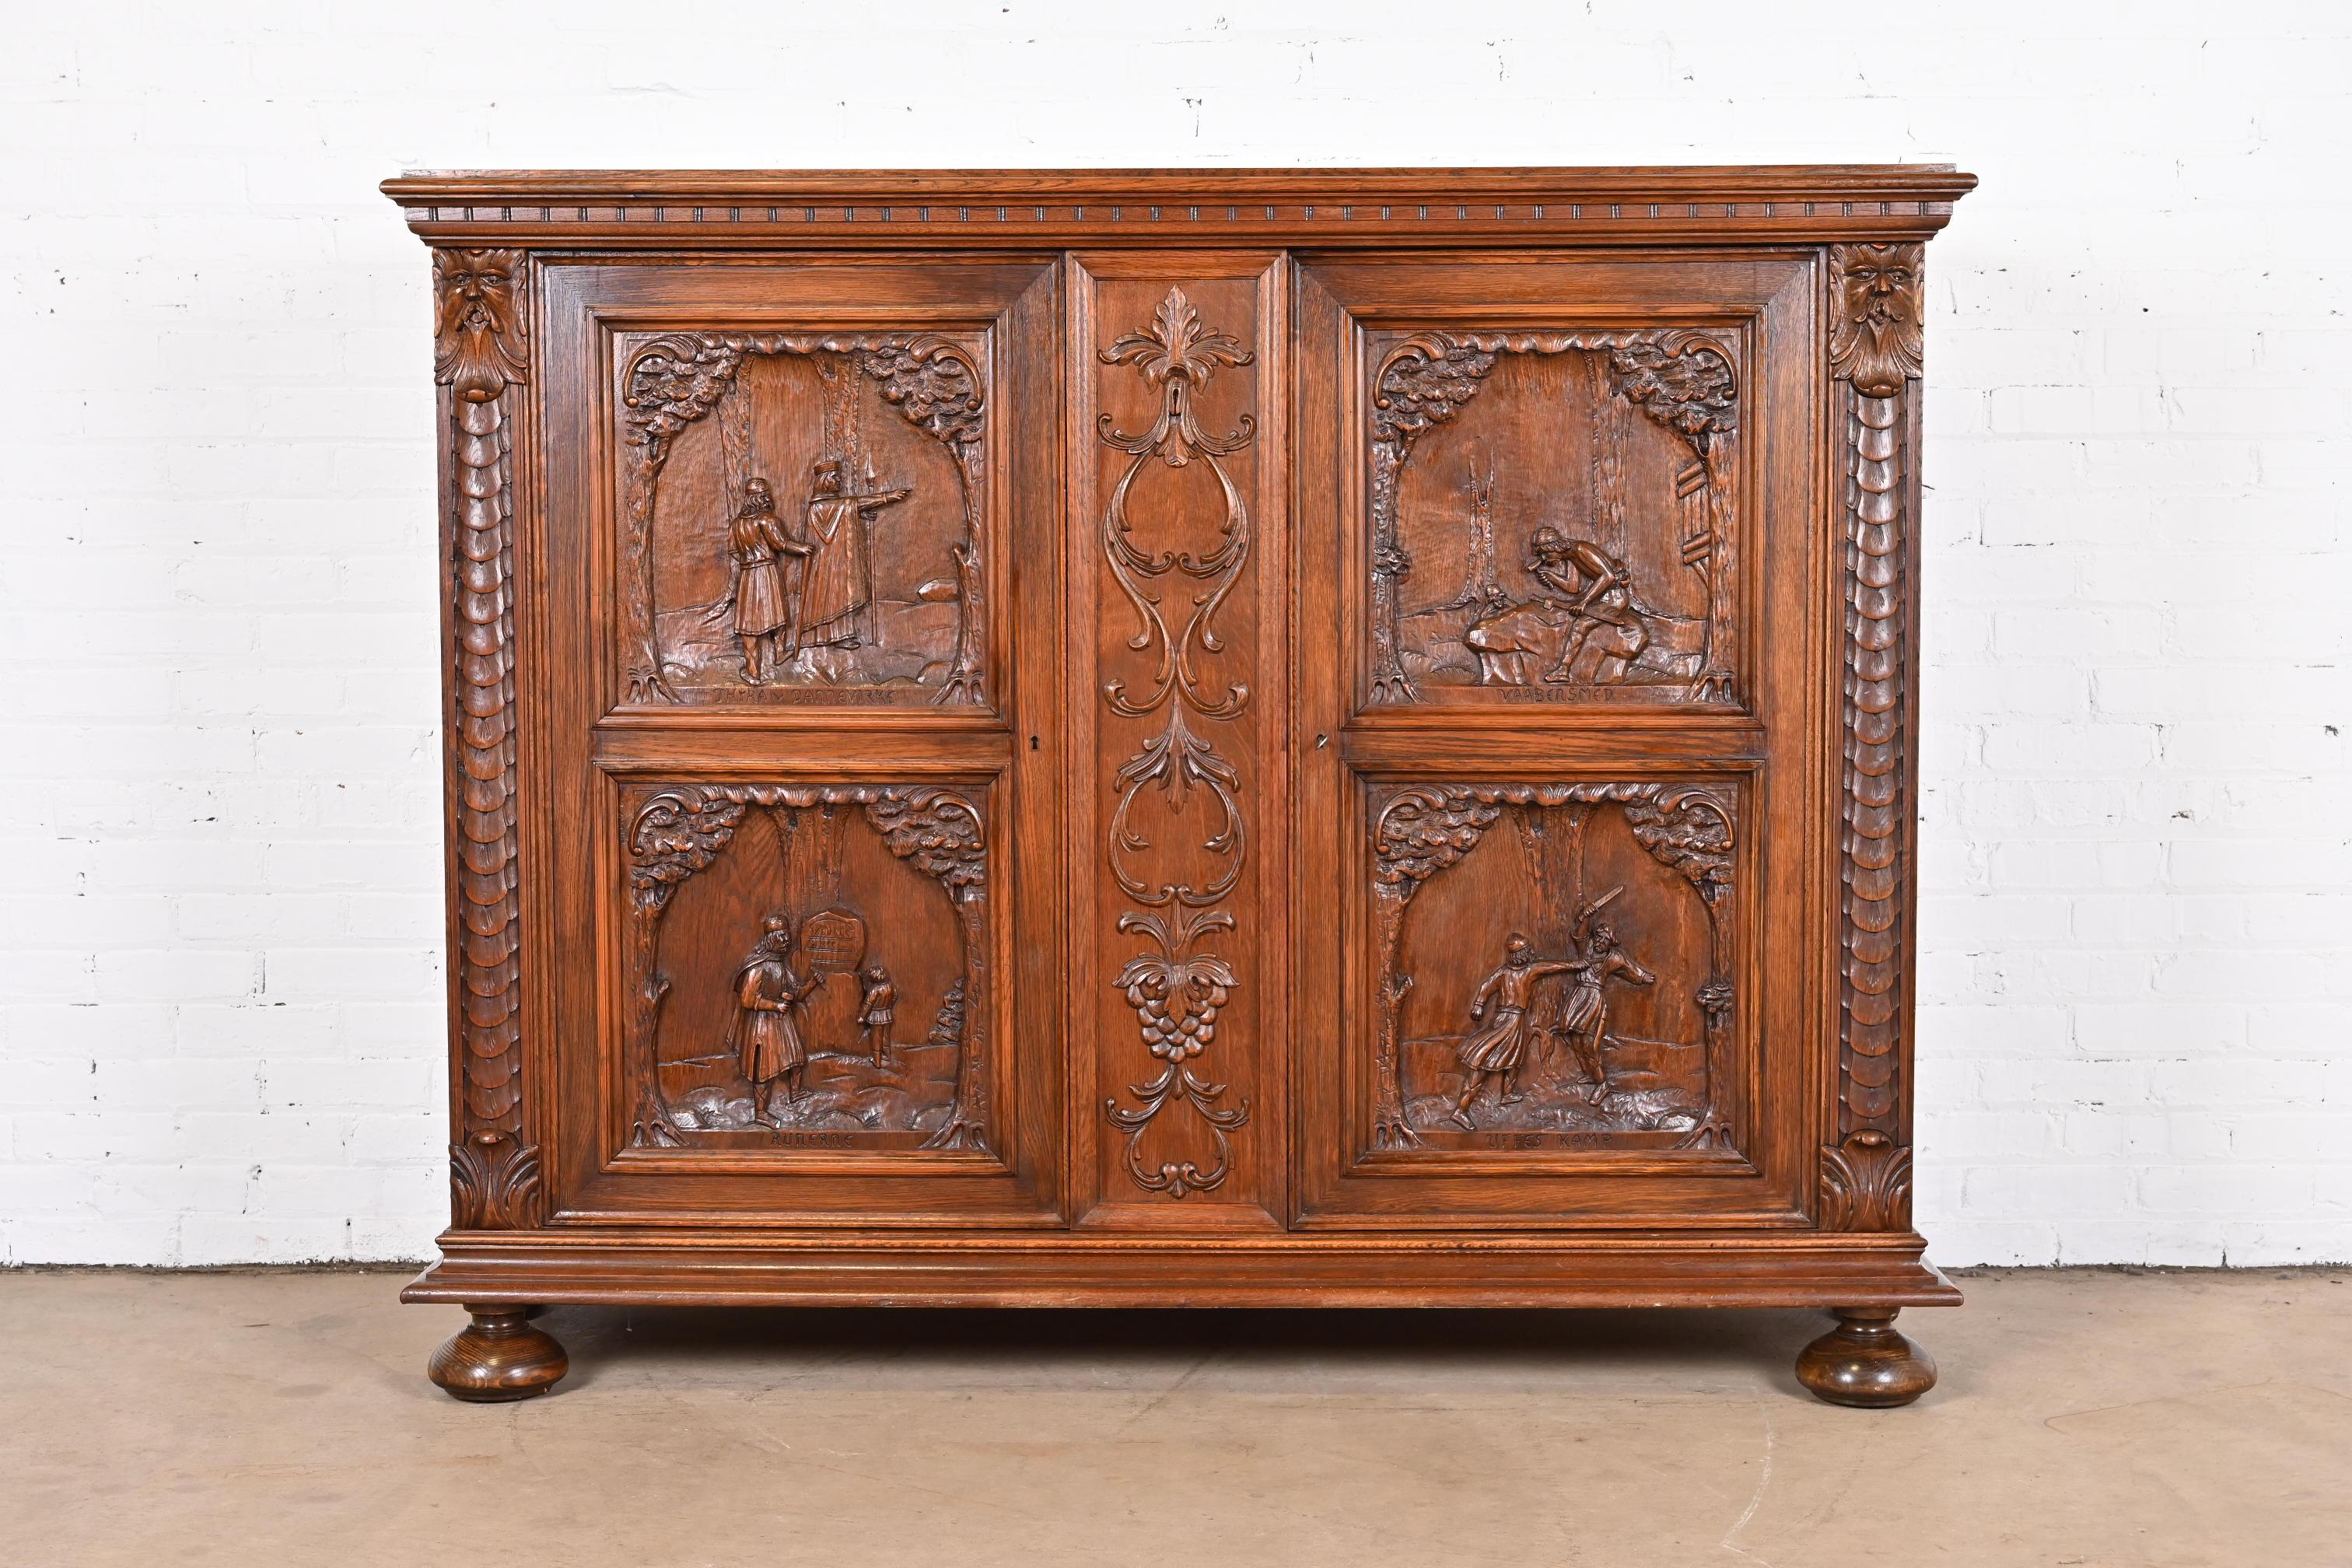 19th Century Antique Danish Renaissance Revival Ornate Carved Oak Sideboard or Bar Cabinet